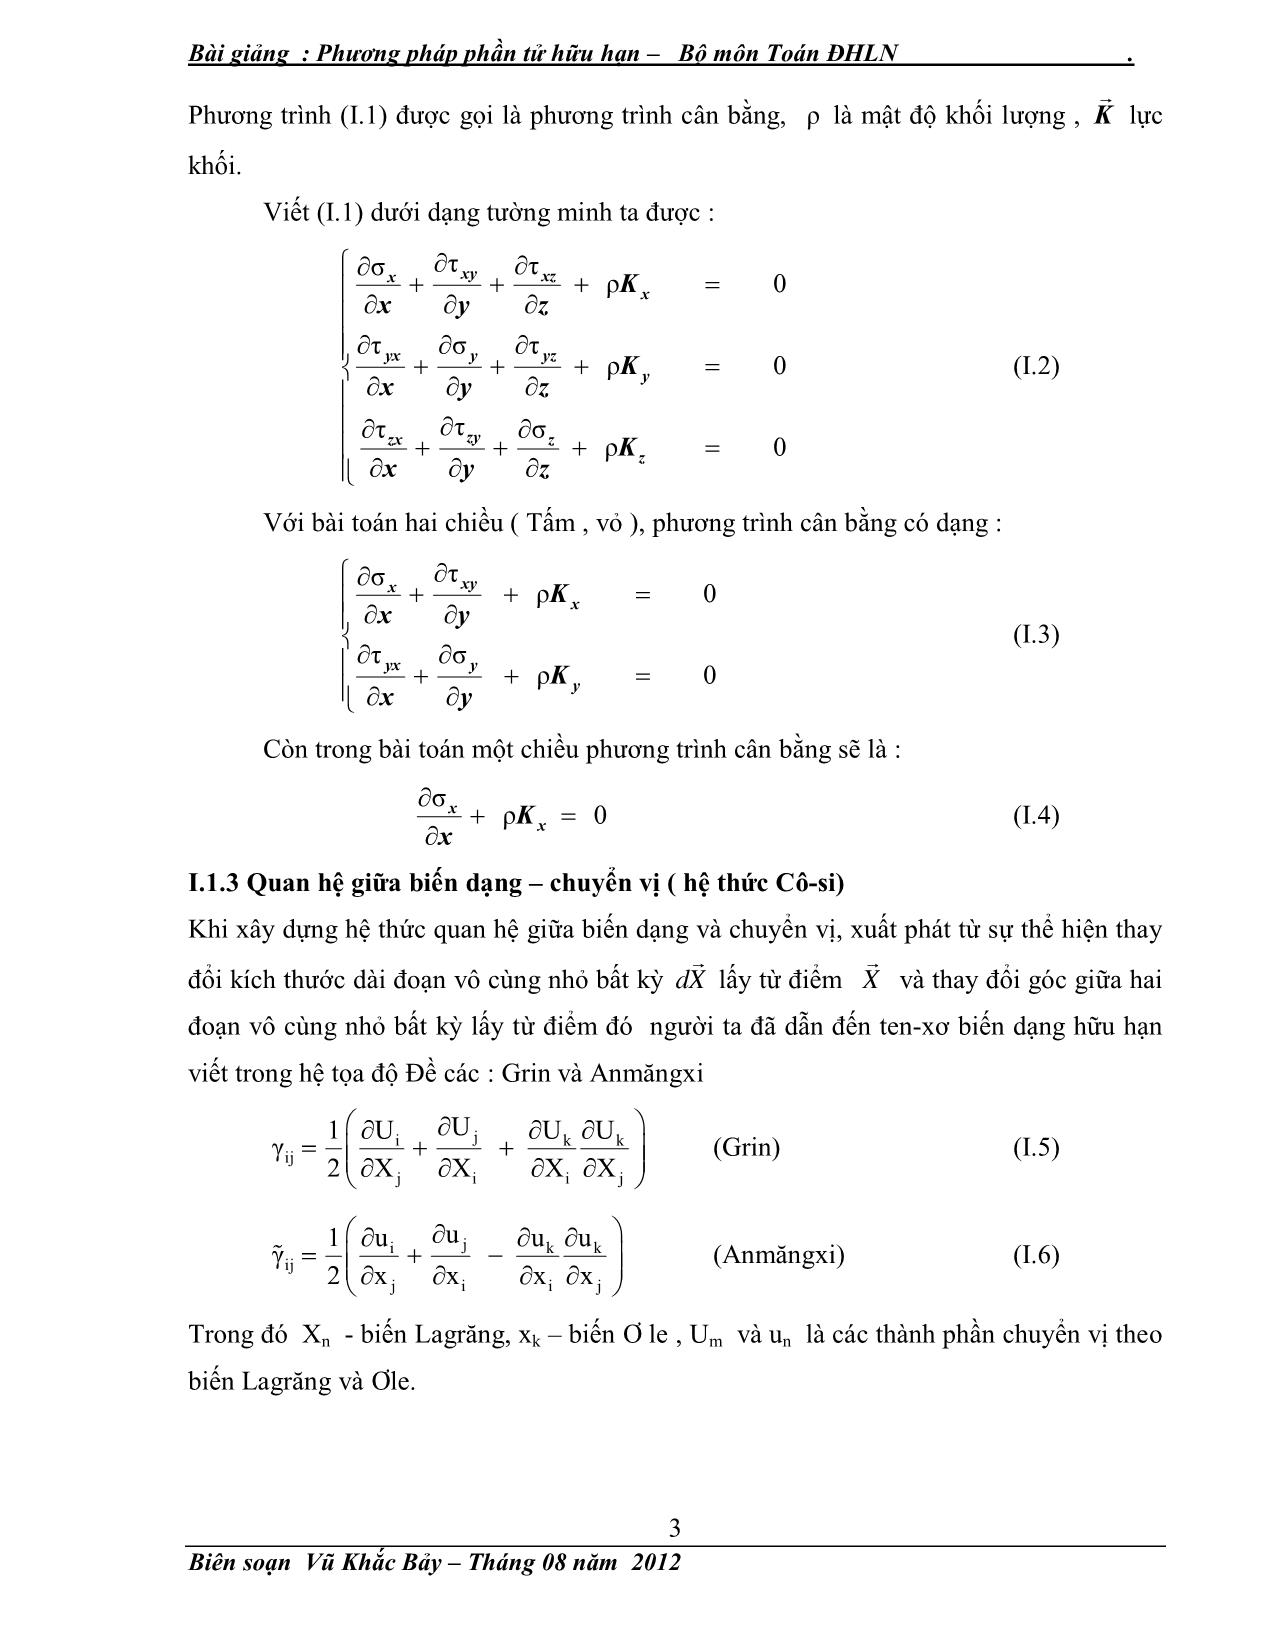 Giáo trình Phương pháp số (Phương pháp phần tử hữu hạn) trang 4